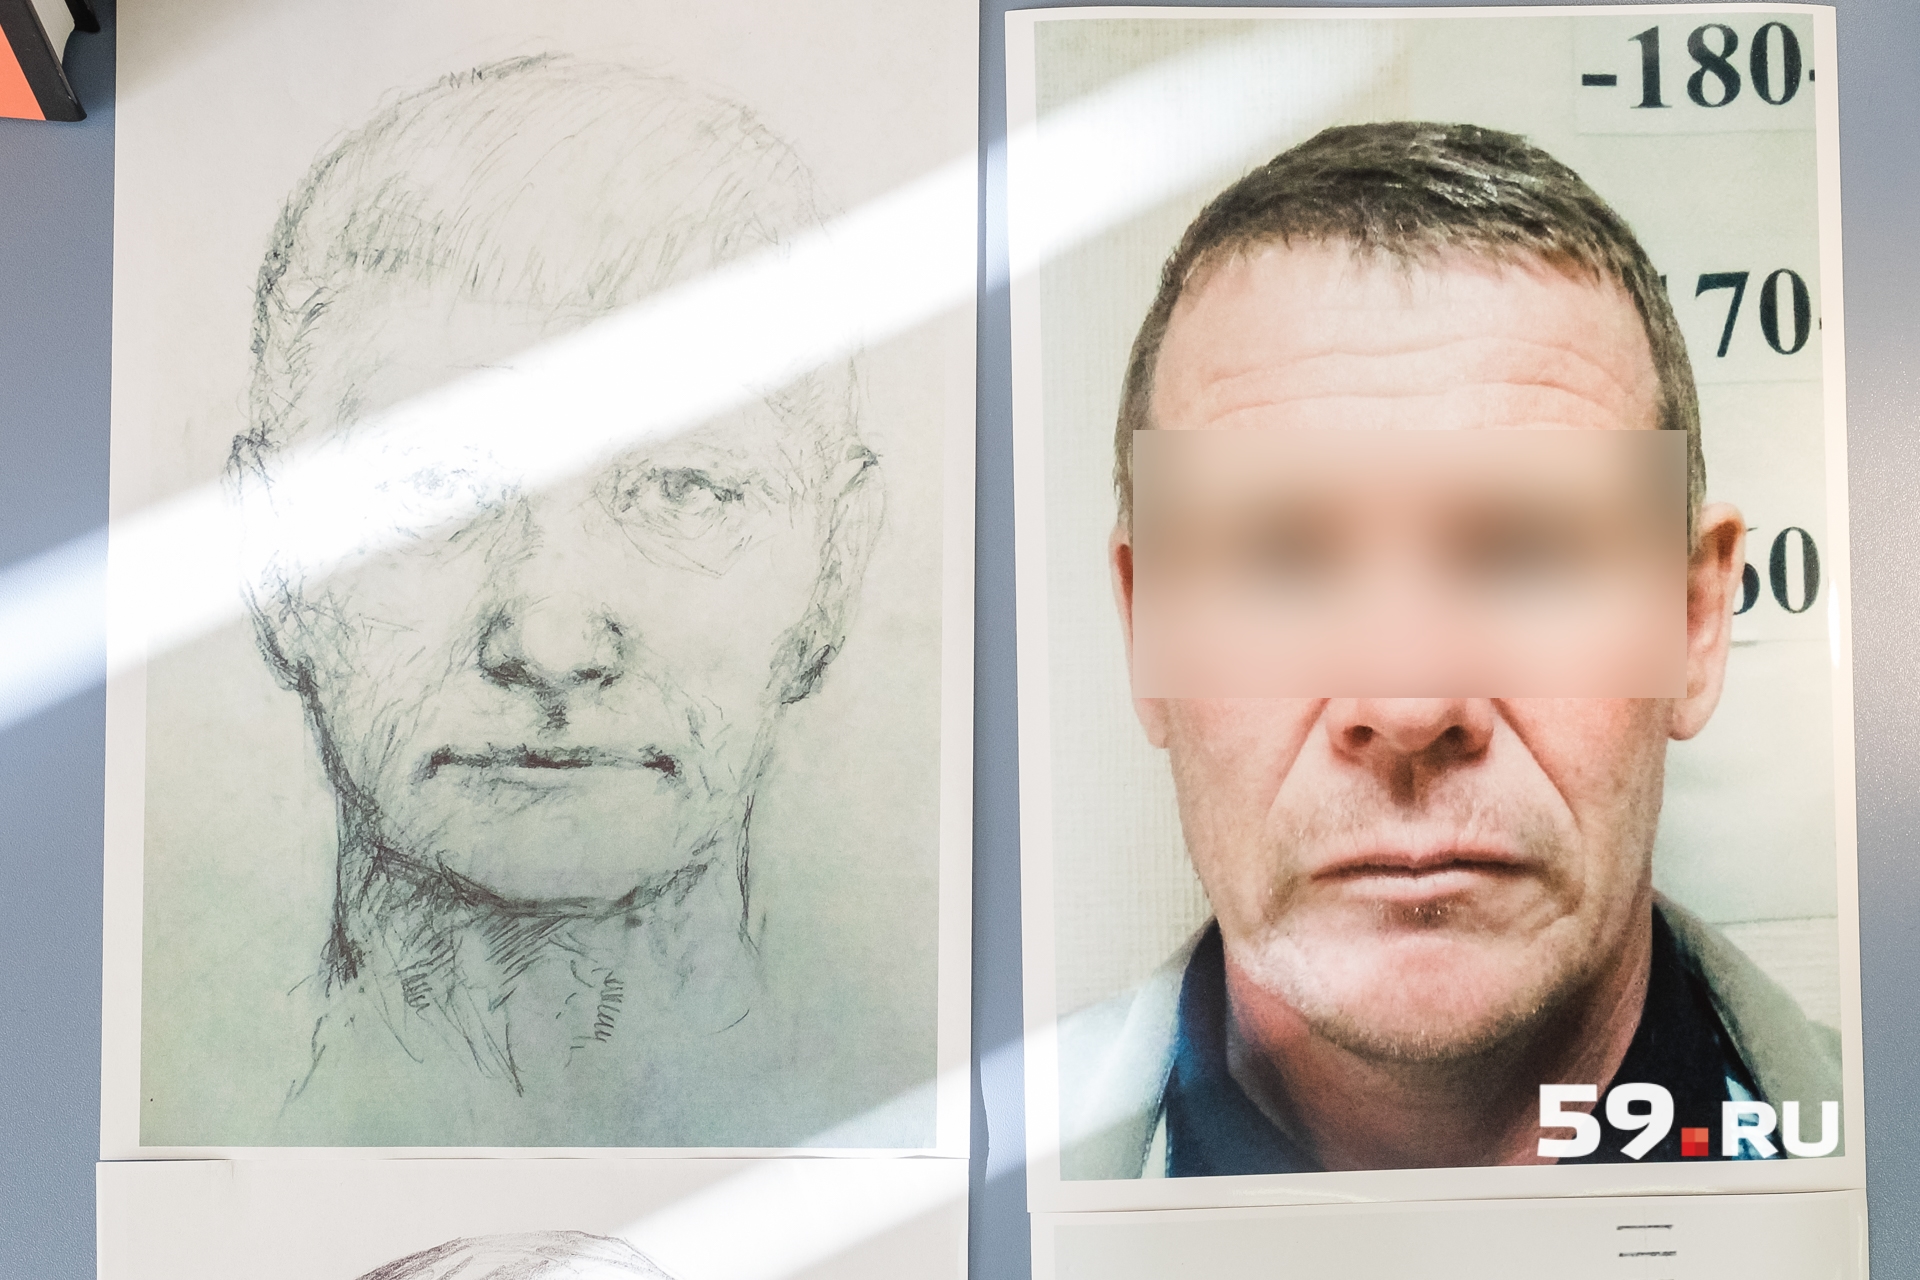 Портреты подозреваемых составляет человек с художественным образованием